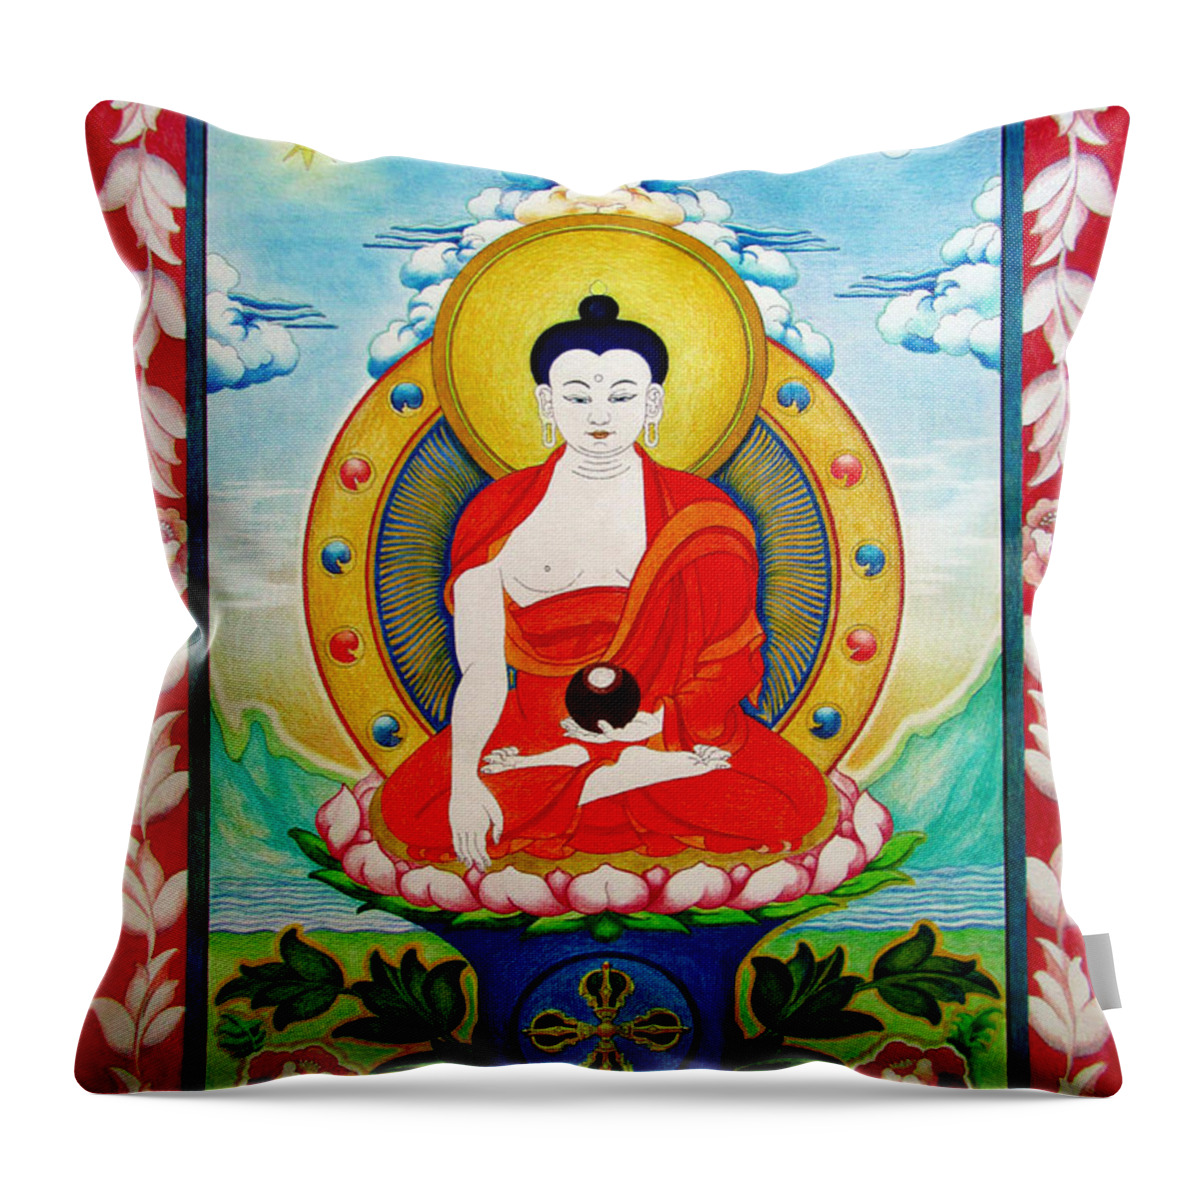 Buddha-nature Throw Pillow featuring the drawing Shakyamuni Buddha by Alexa Szlavics